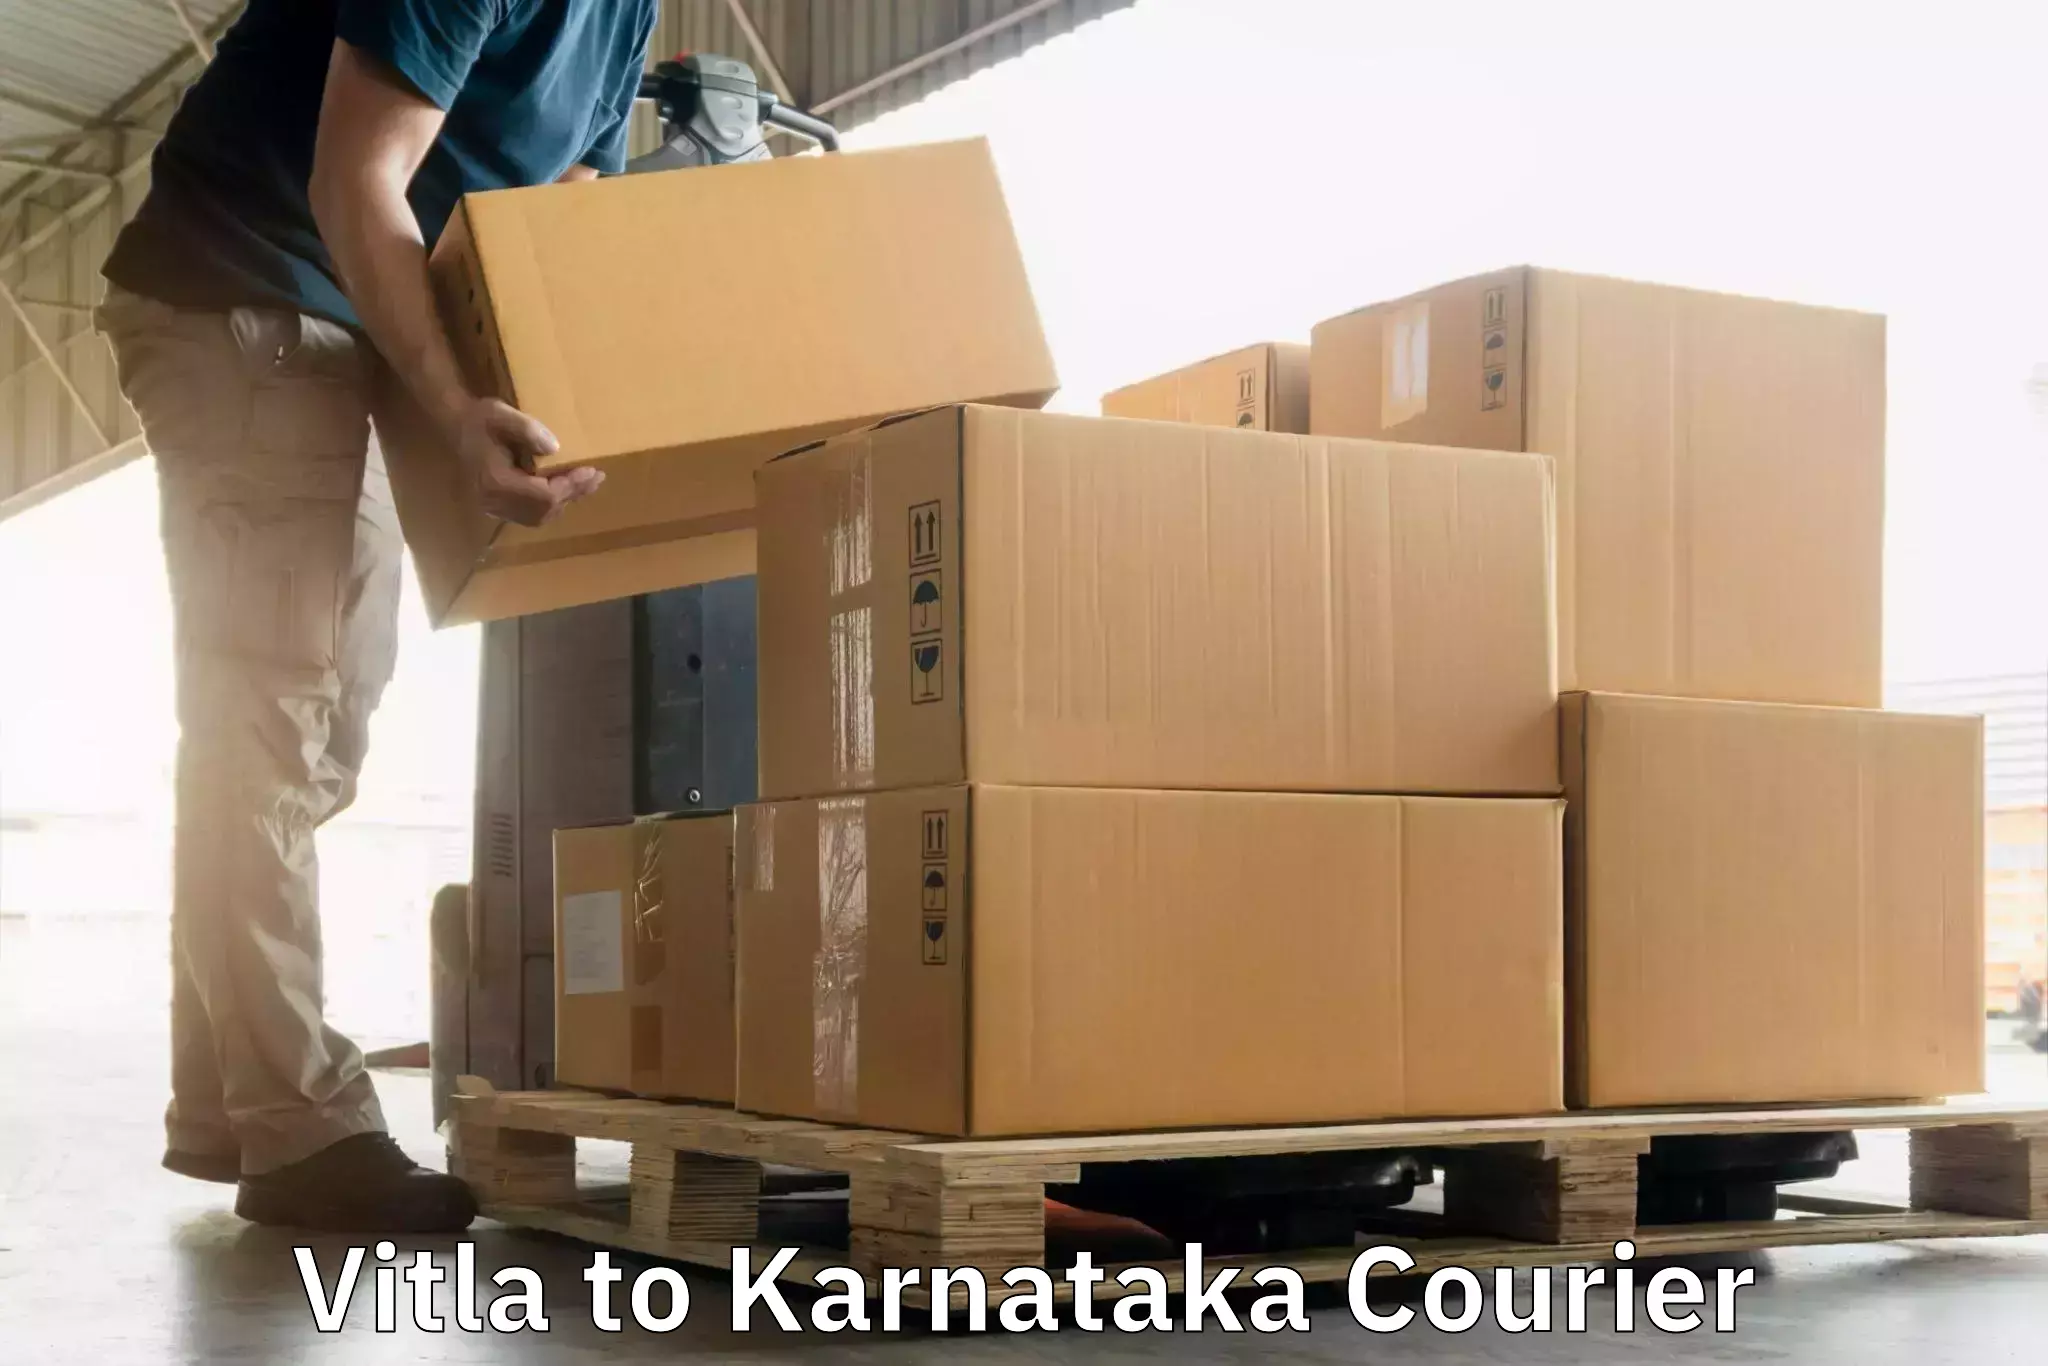 Specialized shipment handling Vitla to Karnataka